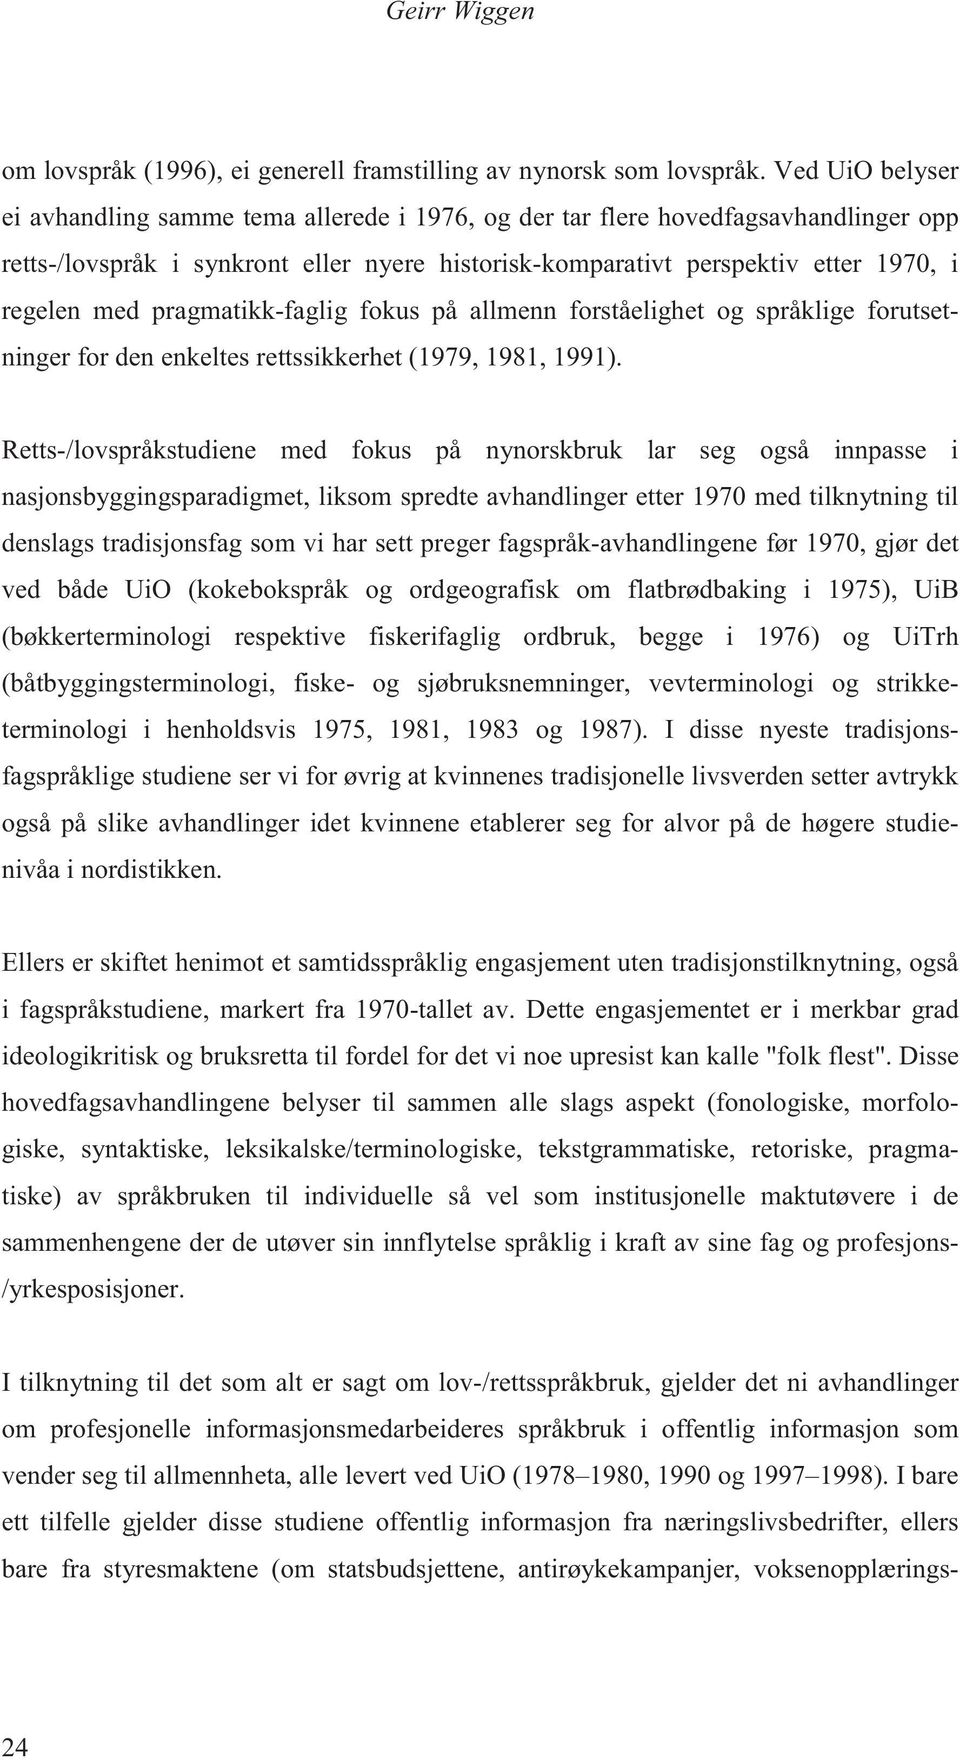 pragmatikk-faglig fokus på allmenn forståelighet og språklige forutsetninger for den enkeltes rettssikkerhet (1979, 1981, 1991).